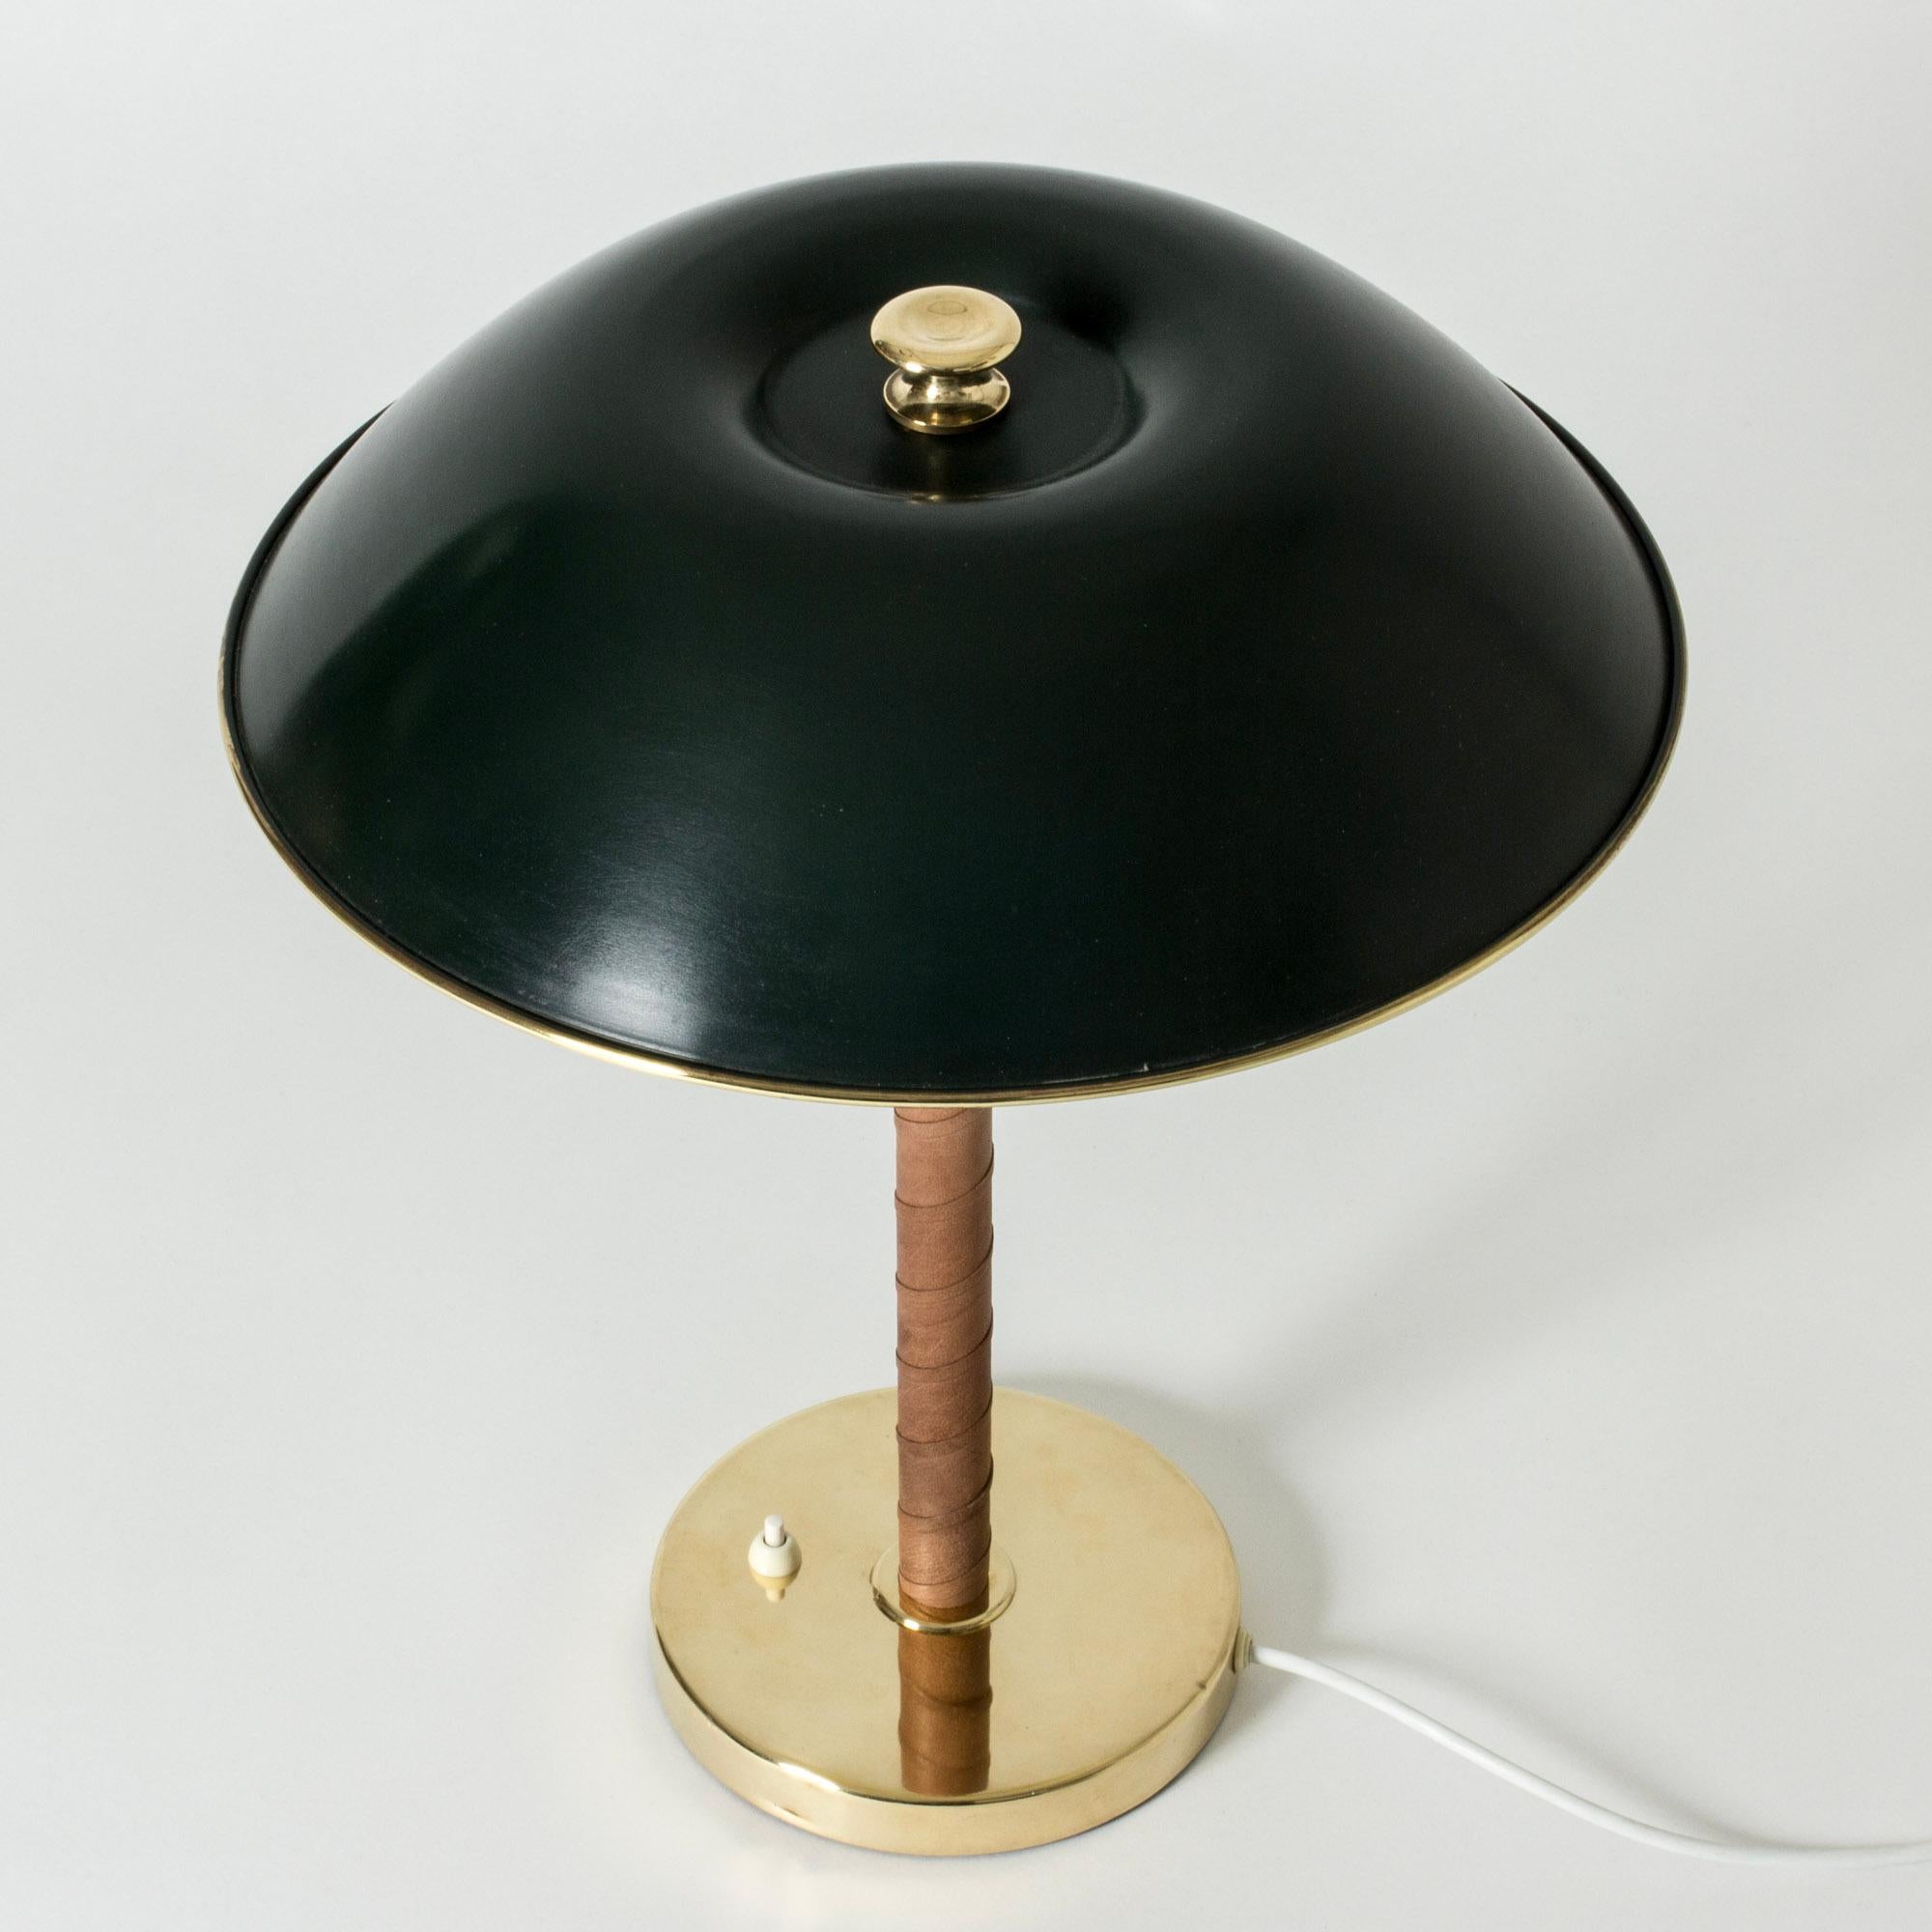 Elegante lampe de table de Böhlmarks, avec une base en laiton, une poignée enroulée en cuir et un abat-jour en métal laqué vert orné d'un bord et d'un bouton en laiton.